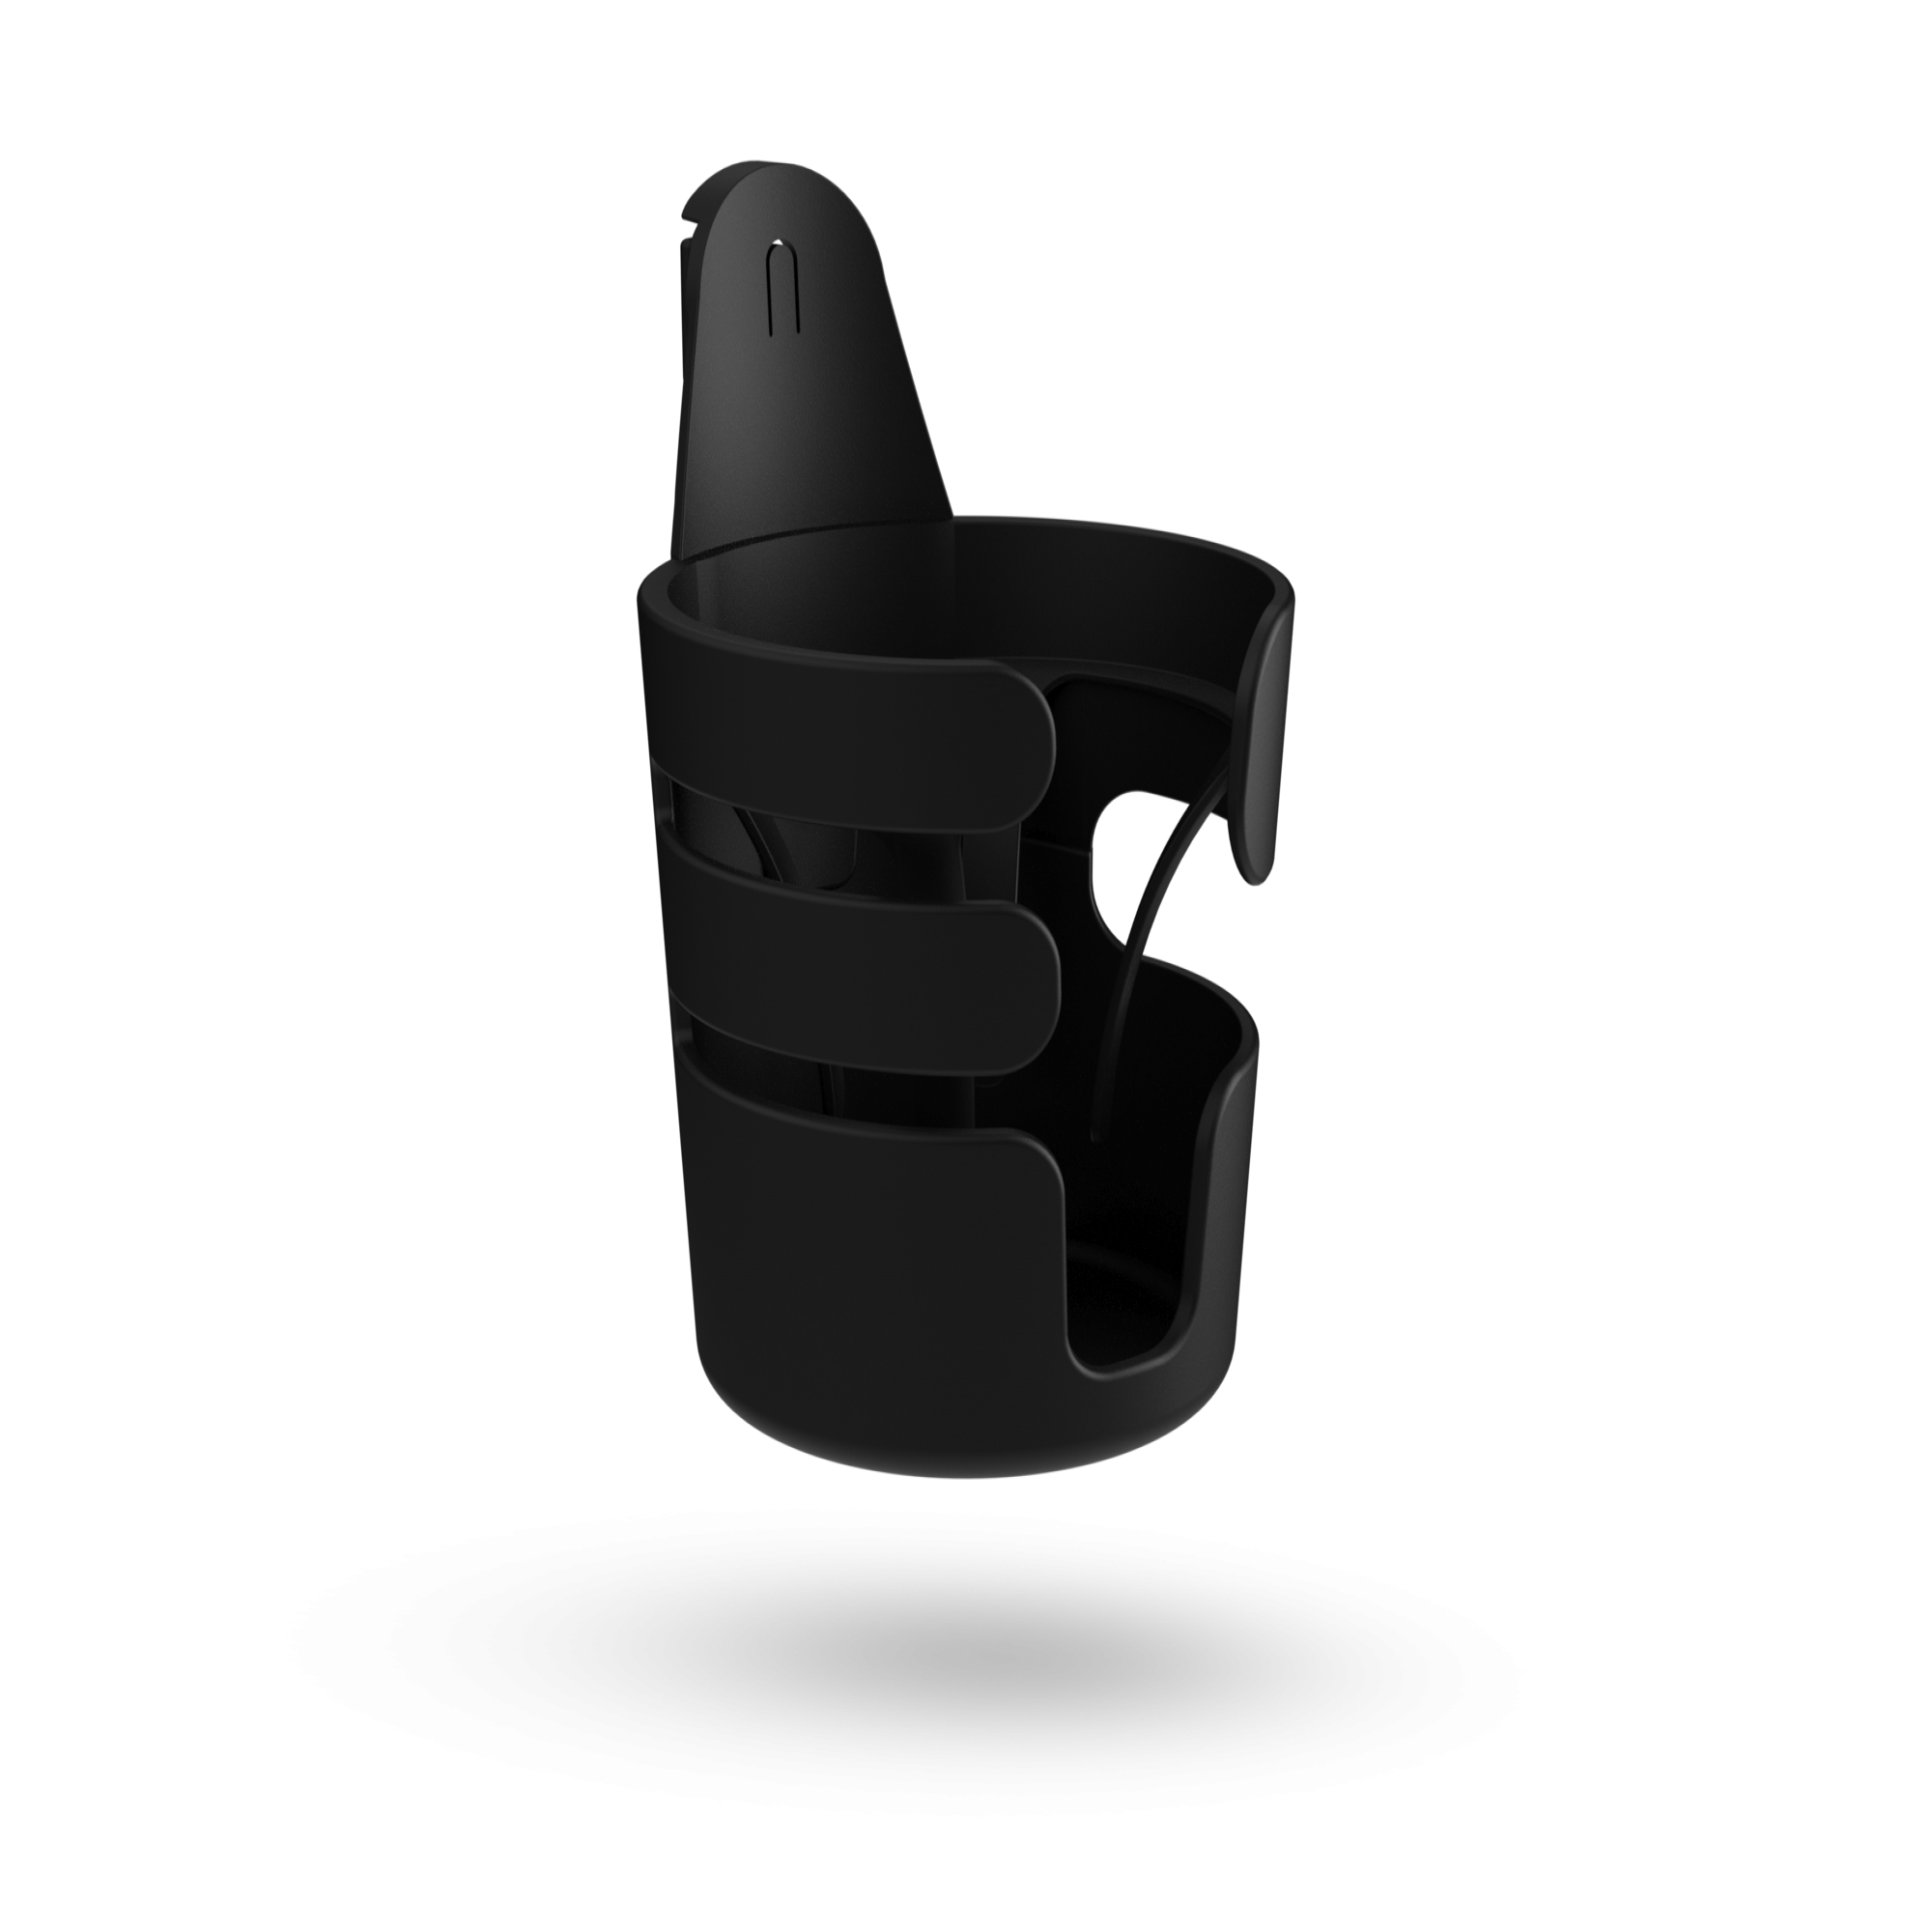 Sanmubo Samber Porte-gobelet Universel pour Poussette Porte-gobelet pour Poussette avec Rotation à 360 ° et Support Anti-Glisse pour Toutes Les poussettes Matériau ABS écologique 